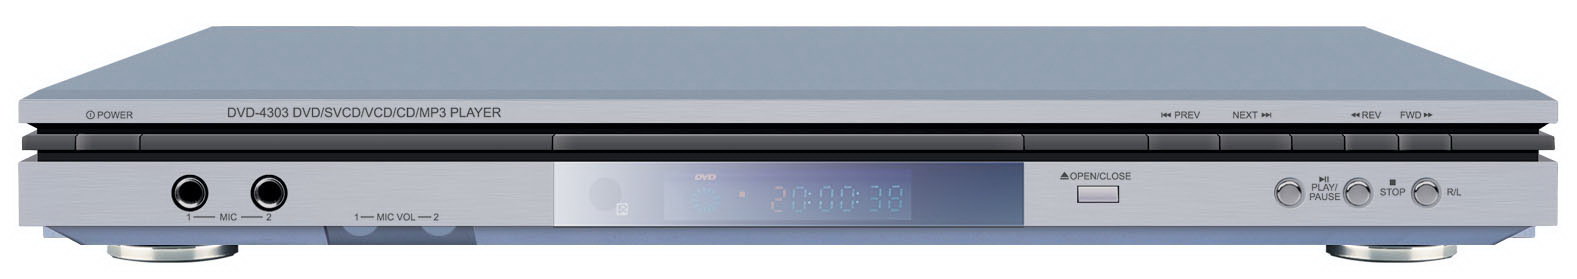 DVD player 4303